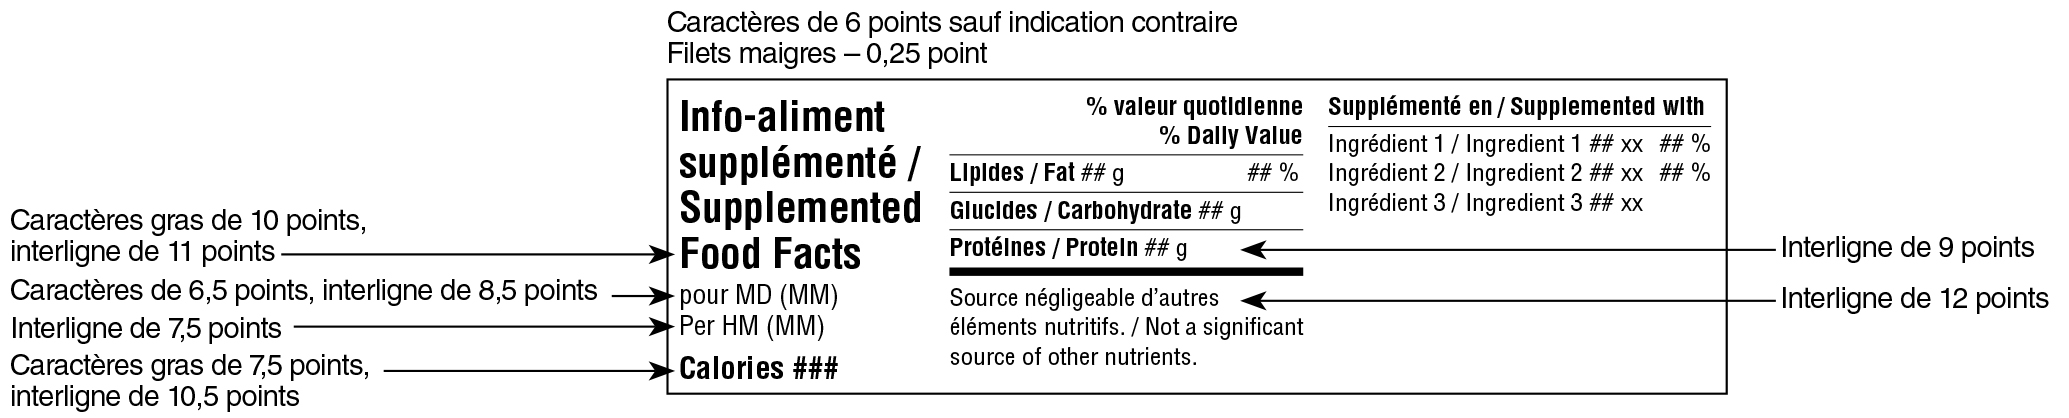 Modèle horizontal simplifié bilingue du tableau des renseignements sur les aliments supplémentés avec indications. Version texte ci-dessous.